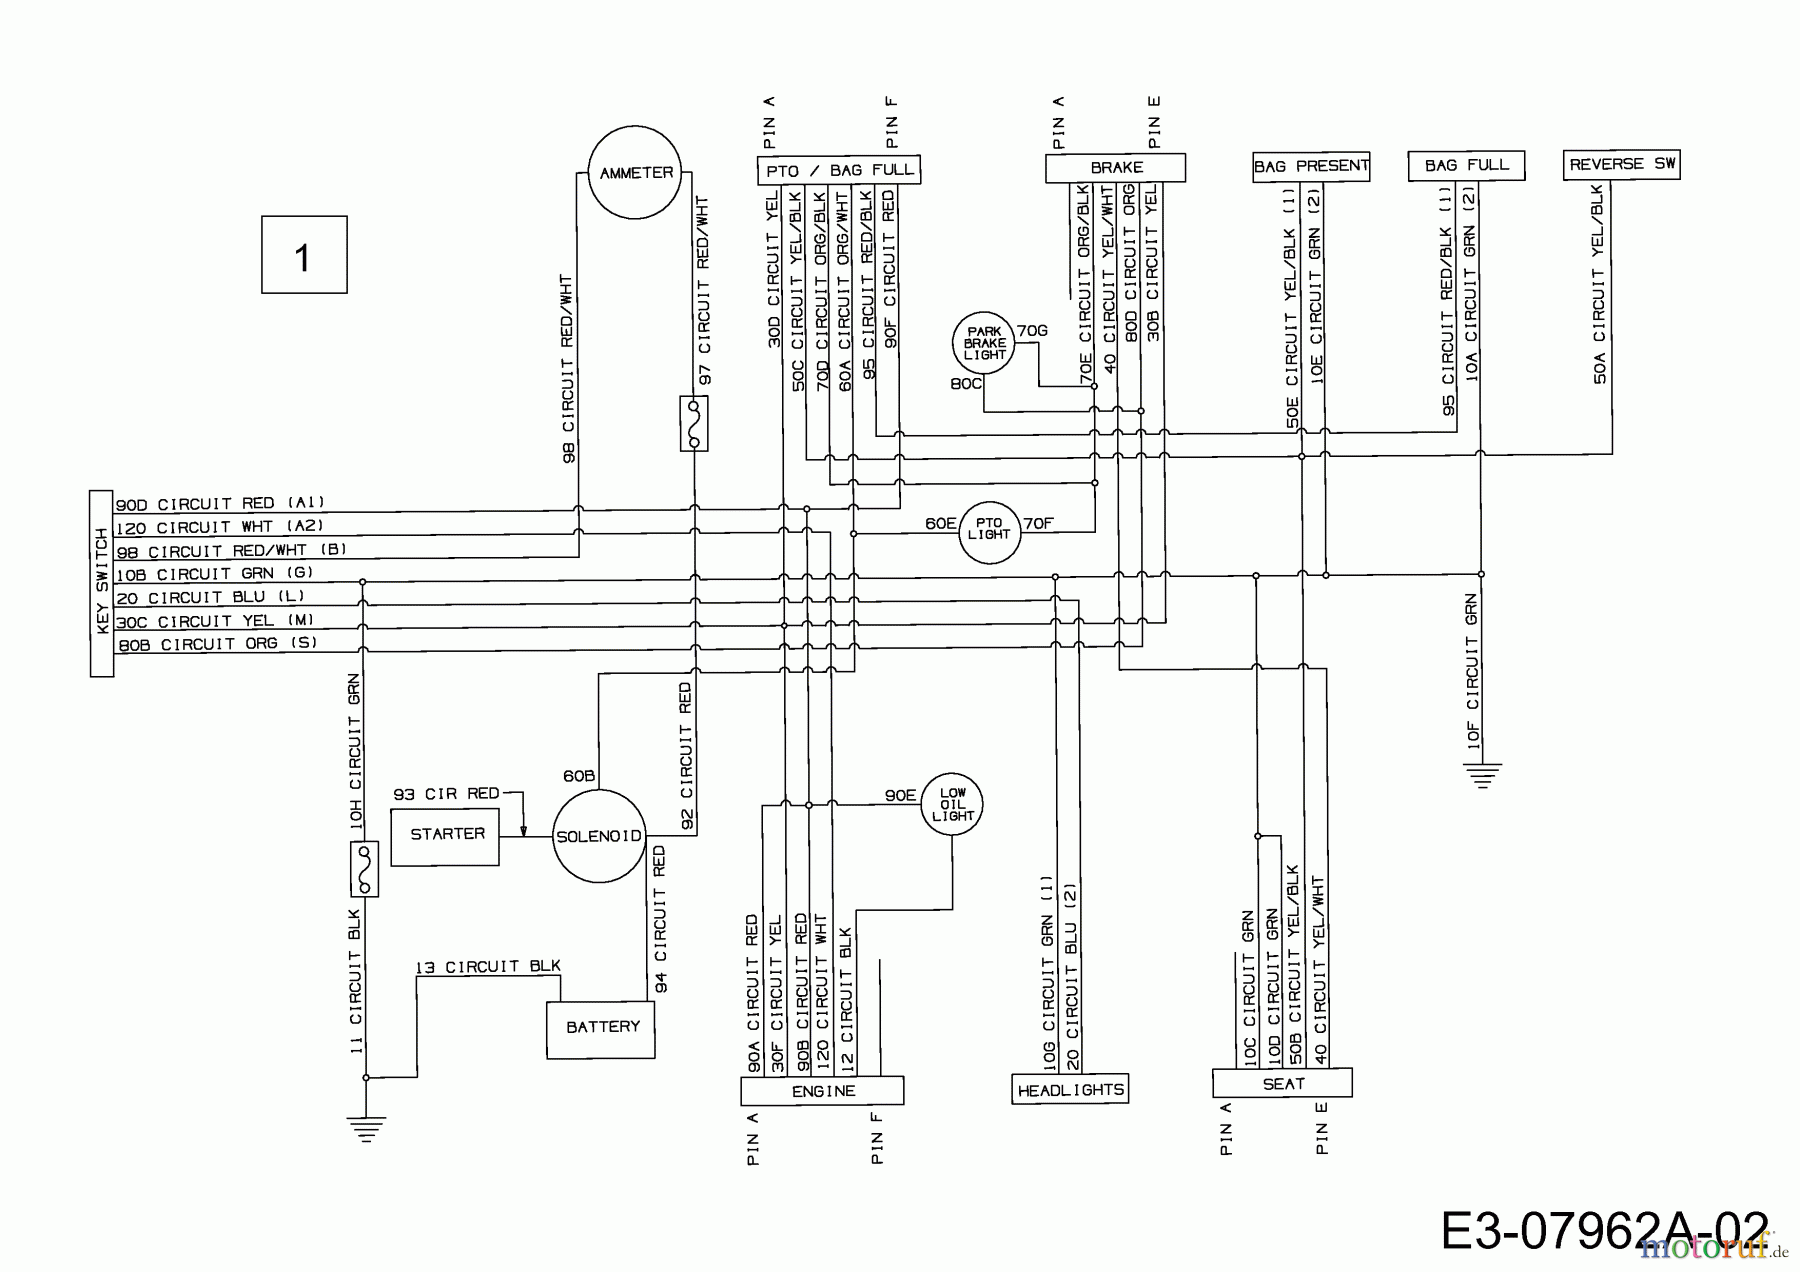  Yard-Man Lawn tractors AG 5165 13AE504G643  (2002) Wiring diagram